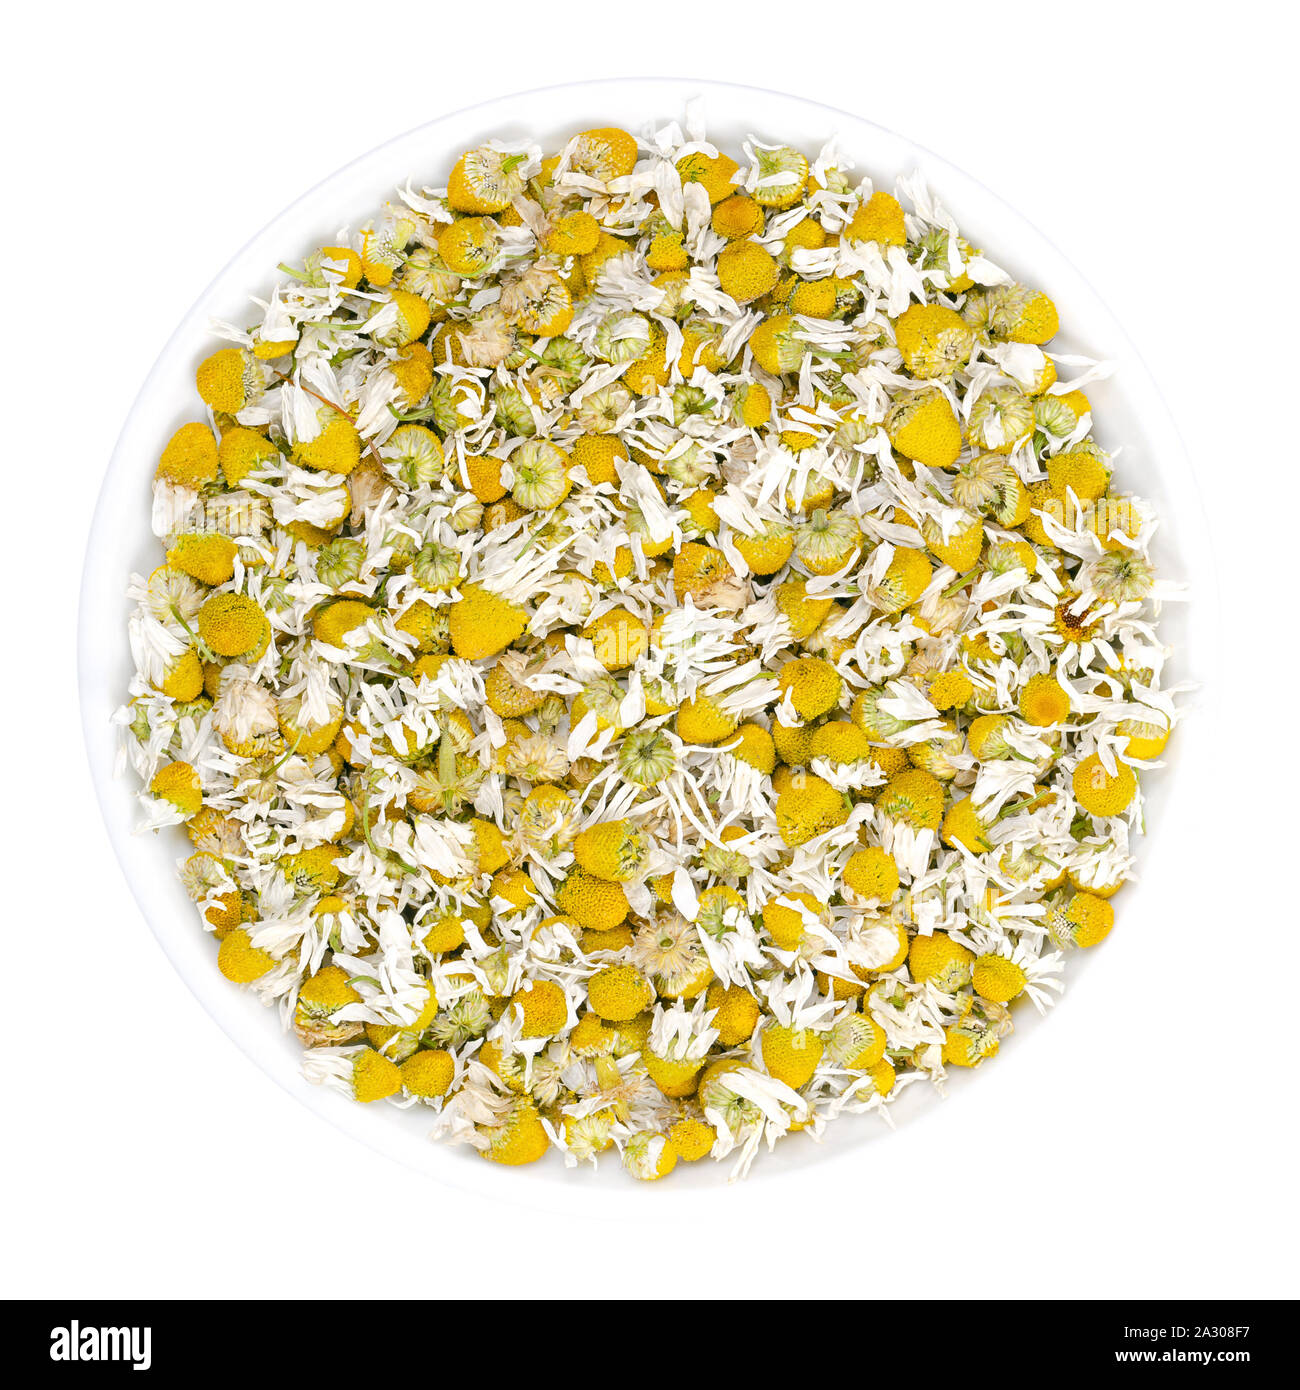 Fleurs de camomille séchées dans un bol blanc. Camomille, fleurs de Matricaria chamomilla, utilisé pour des infusions et en médecine traditionnelle. Banque D'Images